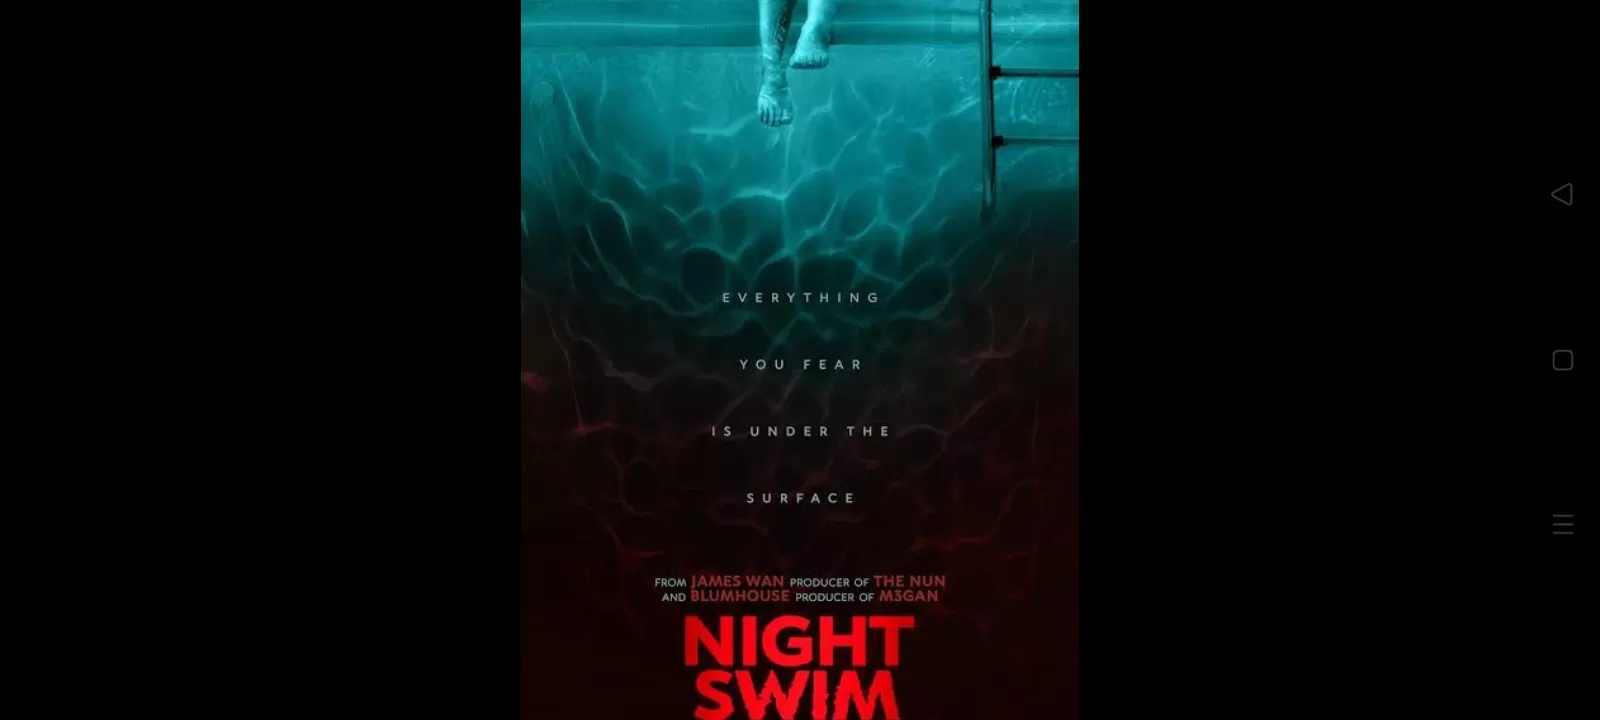 Sinopsis Night Swim: Film Horor yang Bikin Takut Berenang Sendirian, Diteror Hantu di Kolam Renang!